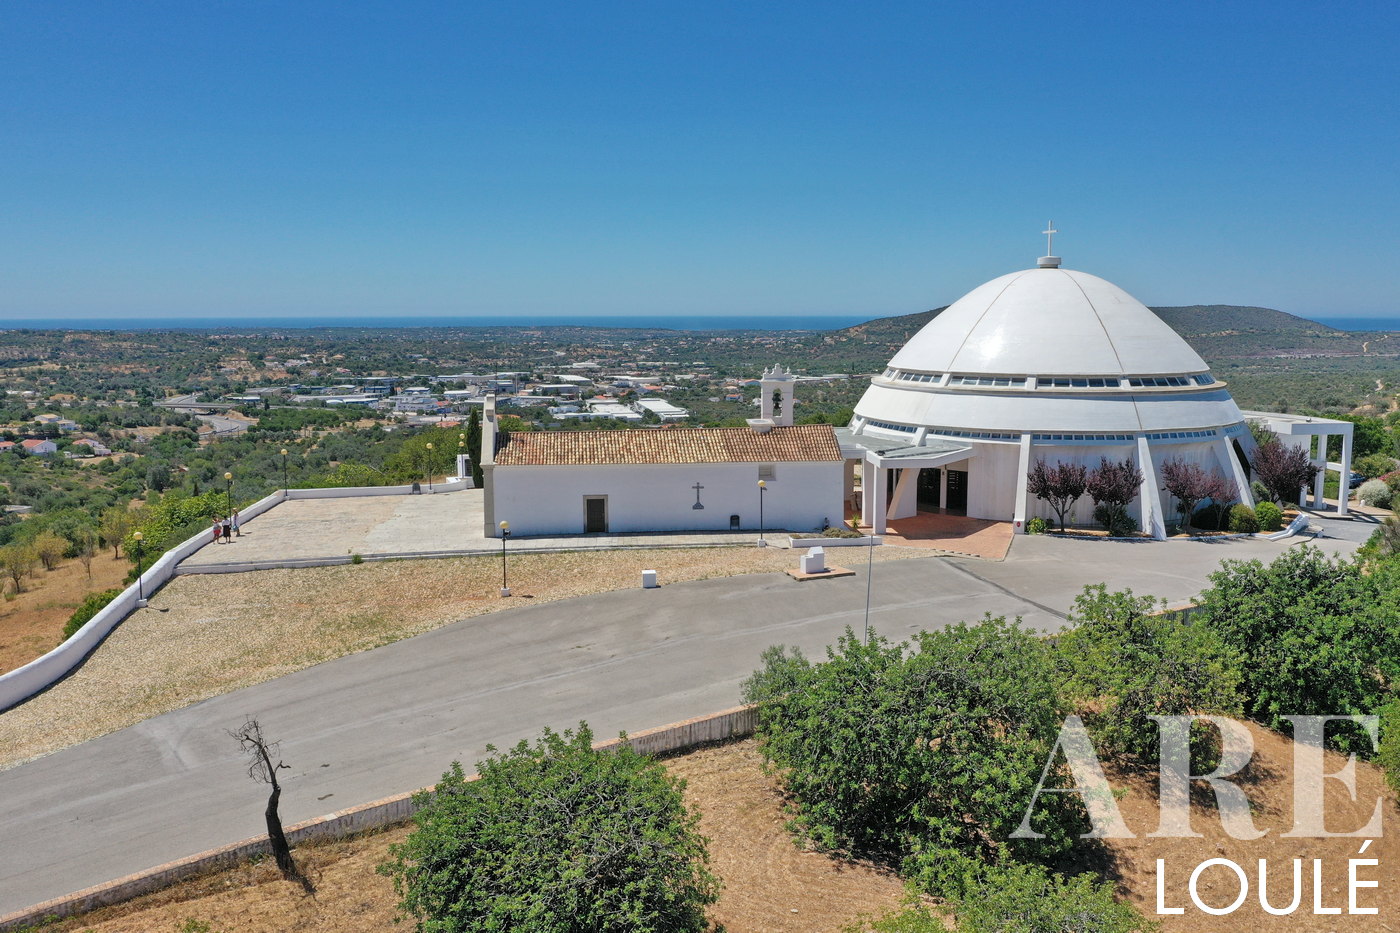 La vista aérea de Igreja da Nossa Senhora da Piedade en Loulé se extiende hacia la costa en un recorrido panorámico, ofreciendo una vista impresionante de aproximadamente 9 km de distancia en línea recta.